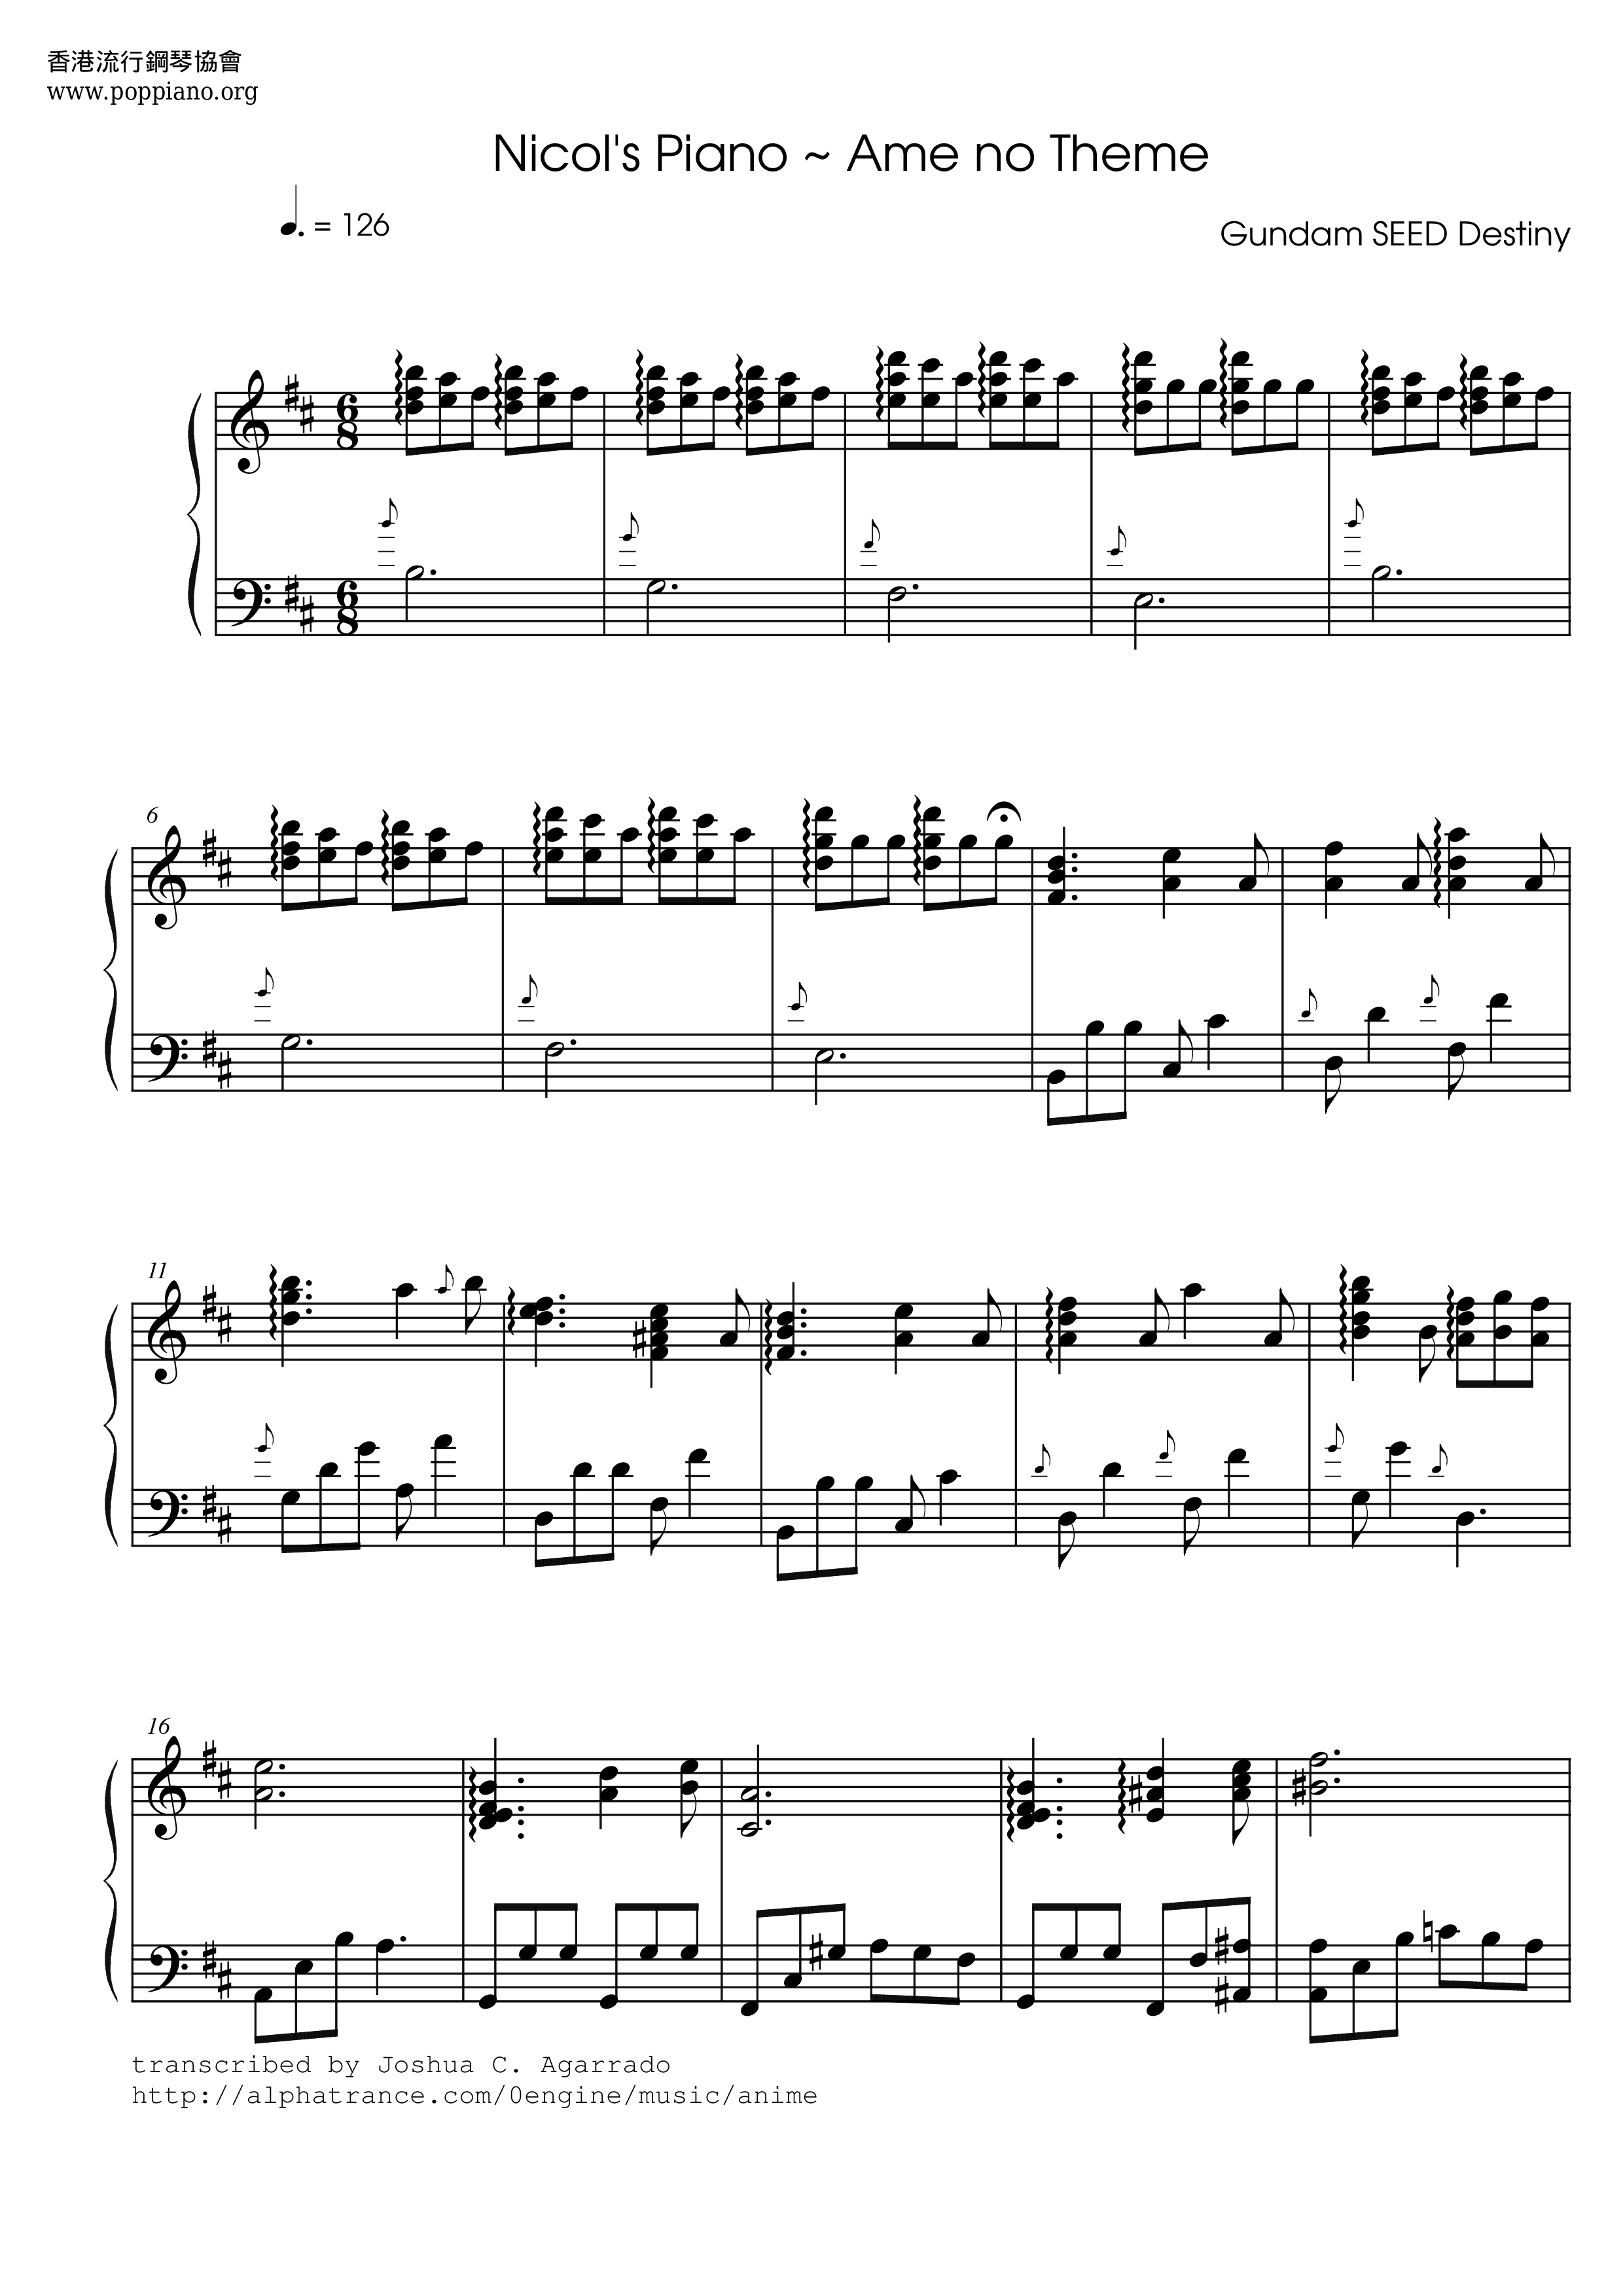 Nocol's Piano - Ame no Theme琴谱